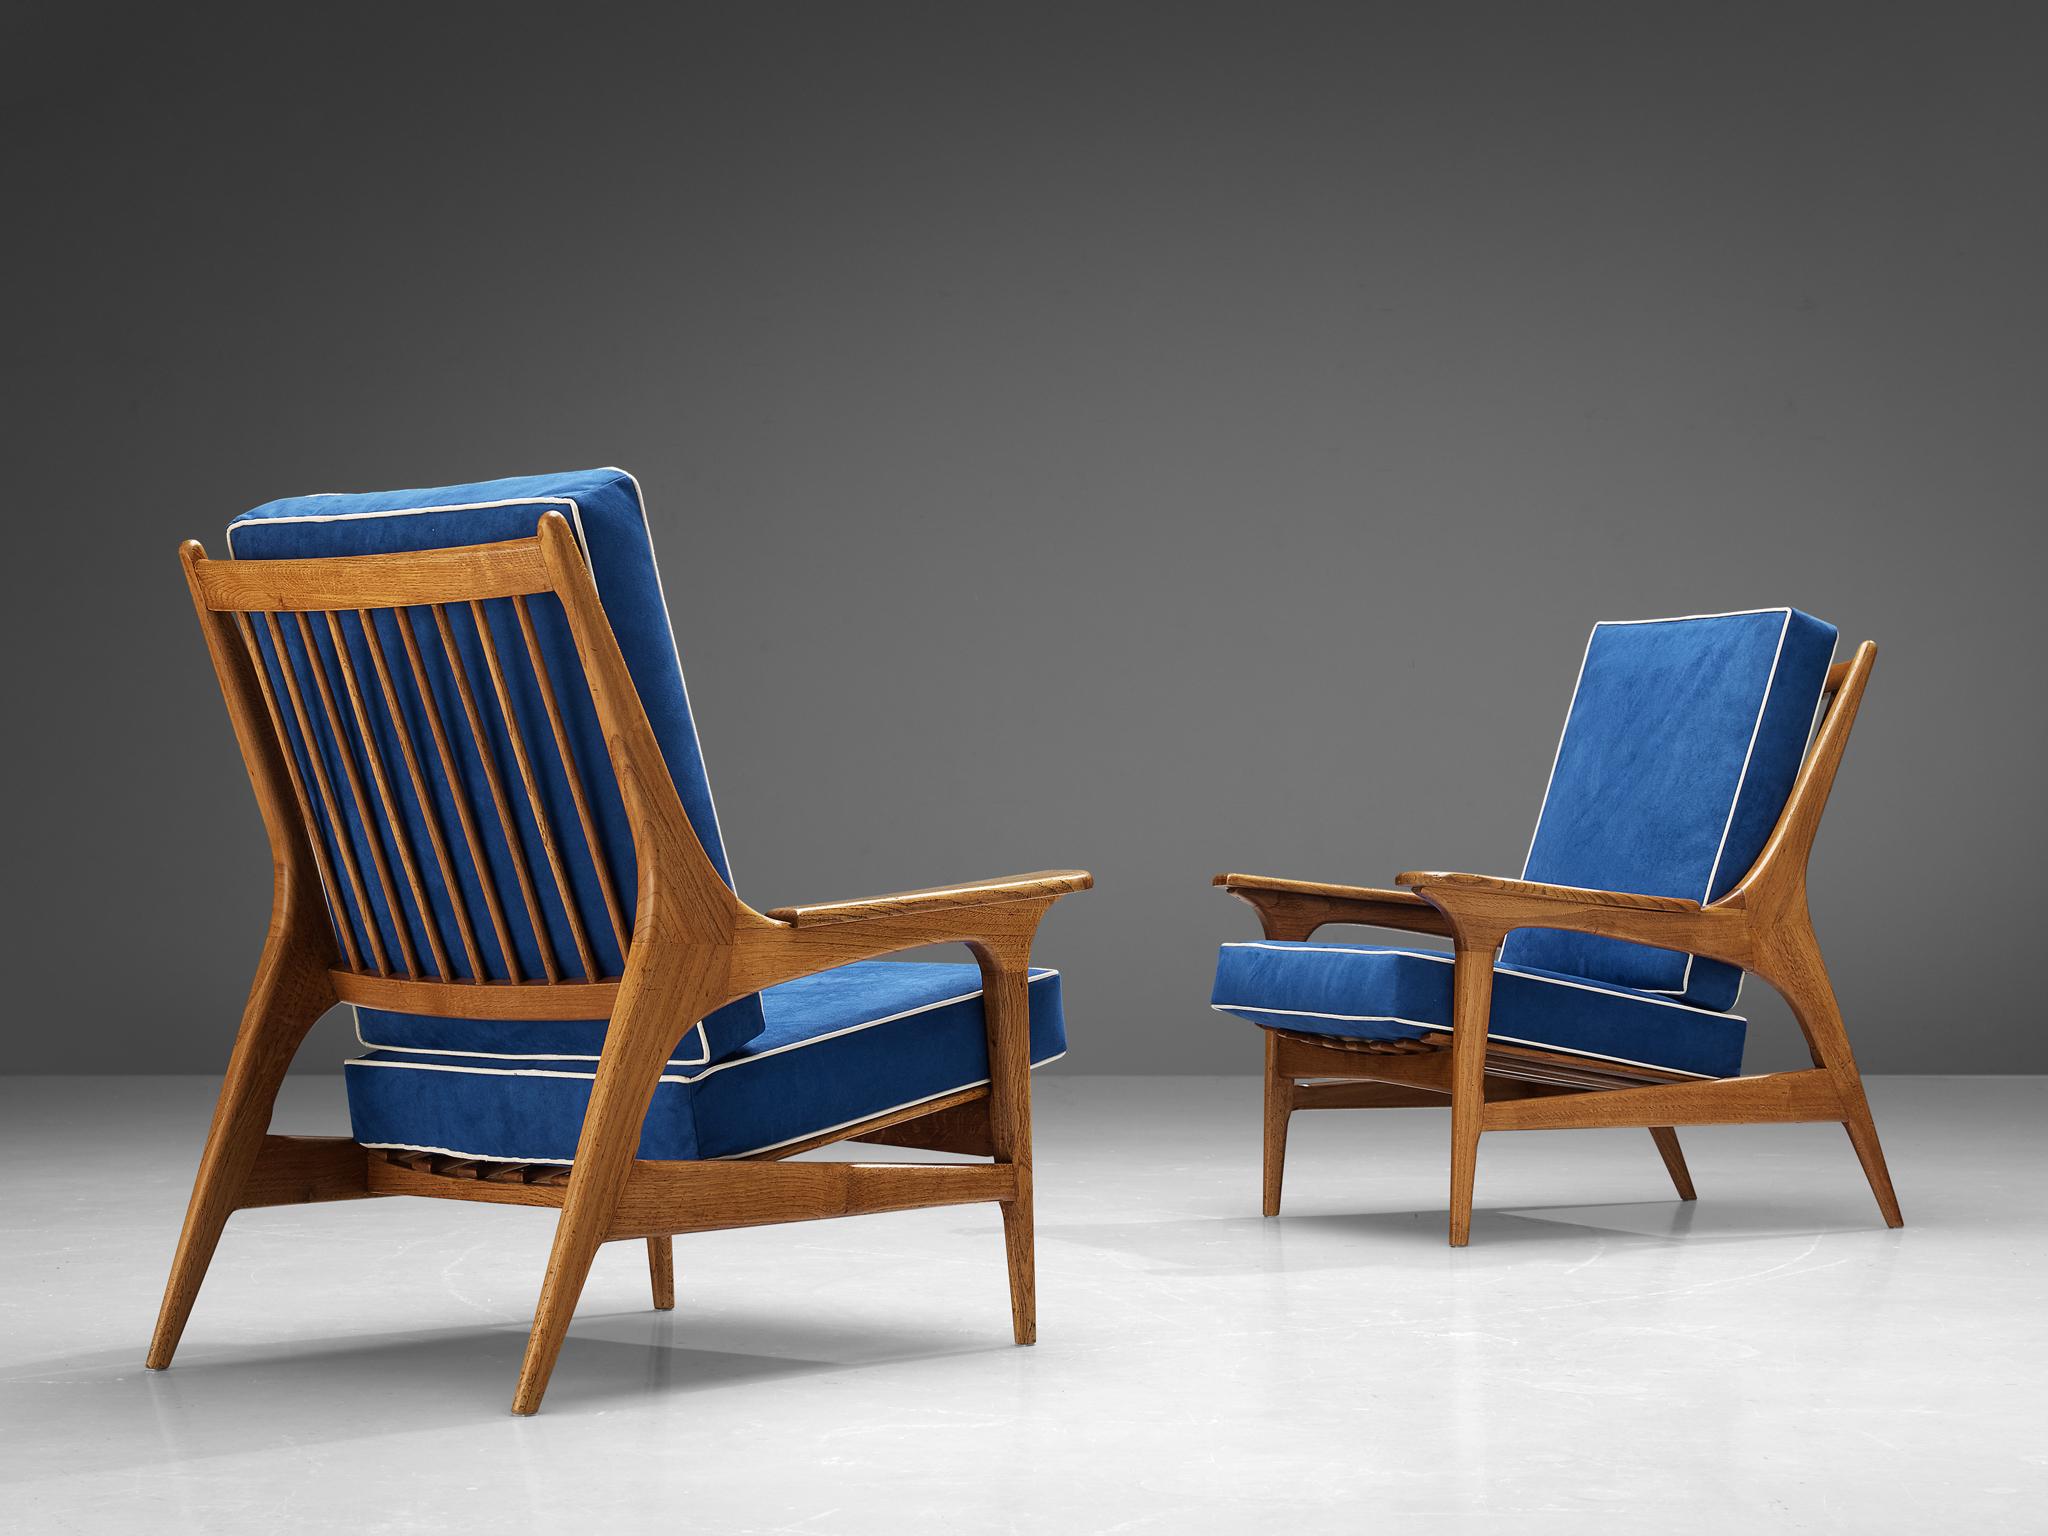 Paire de chaises longues, chêne, alcantara, Italie, années 1960

Cette paire frappante de chaises longues est dotée d'un revêtement en alcantara bleu de mer accrocheur, donnant à la pièce une touche vibrante et vivante. La couleur bleue s'harmonise